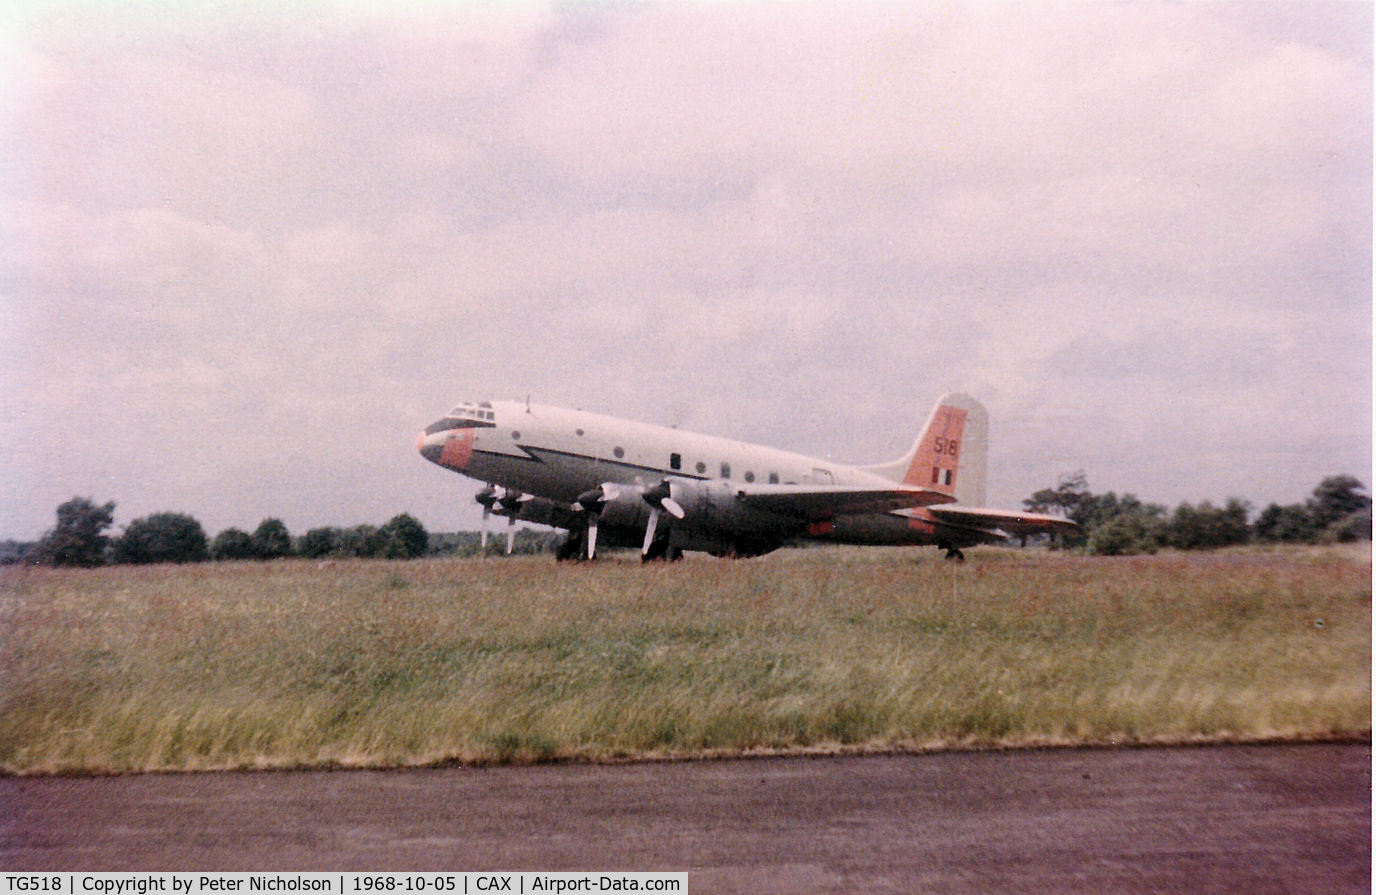 TG518, Handley Page Hastings C.5 C/N HP67/17, Hastings T.5 resident at Carlisle in October 1968.